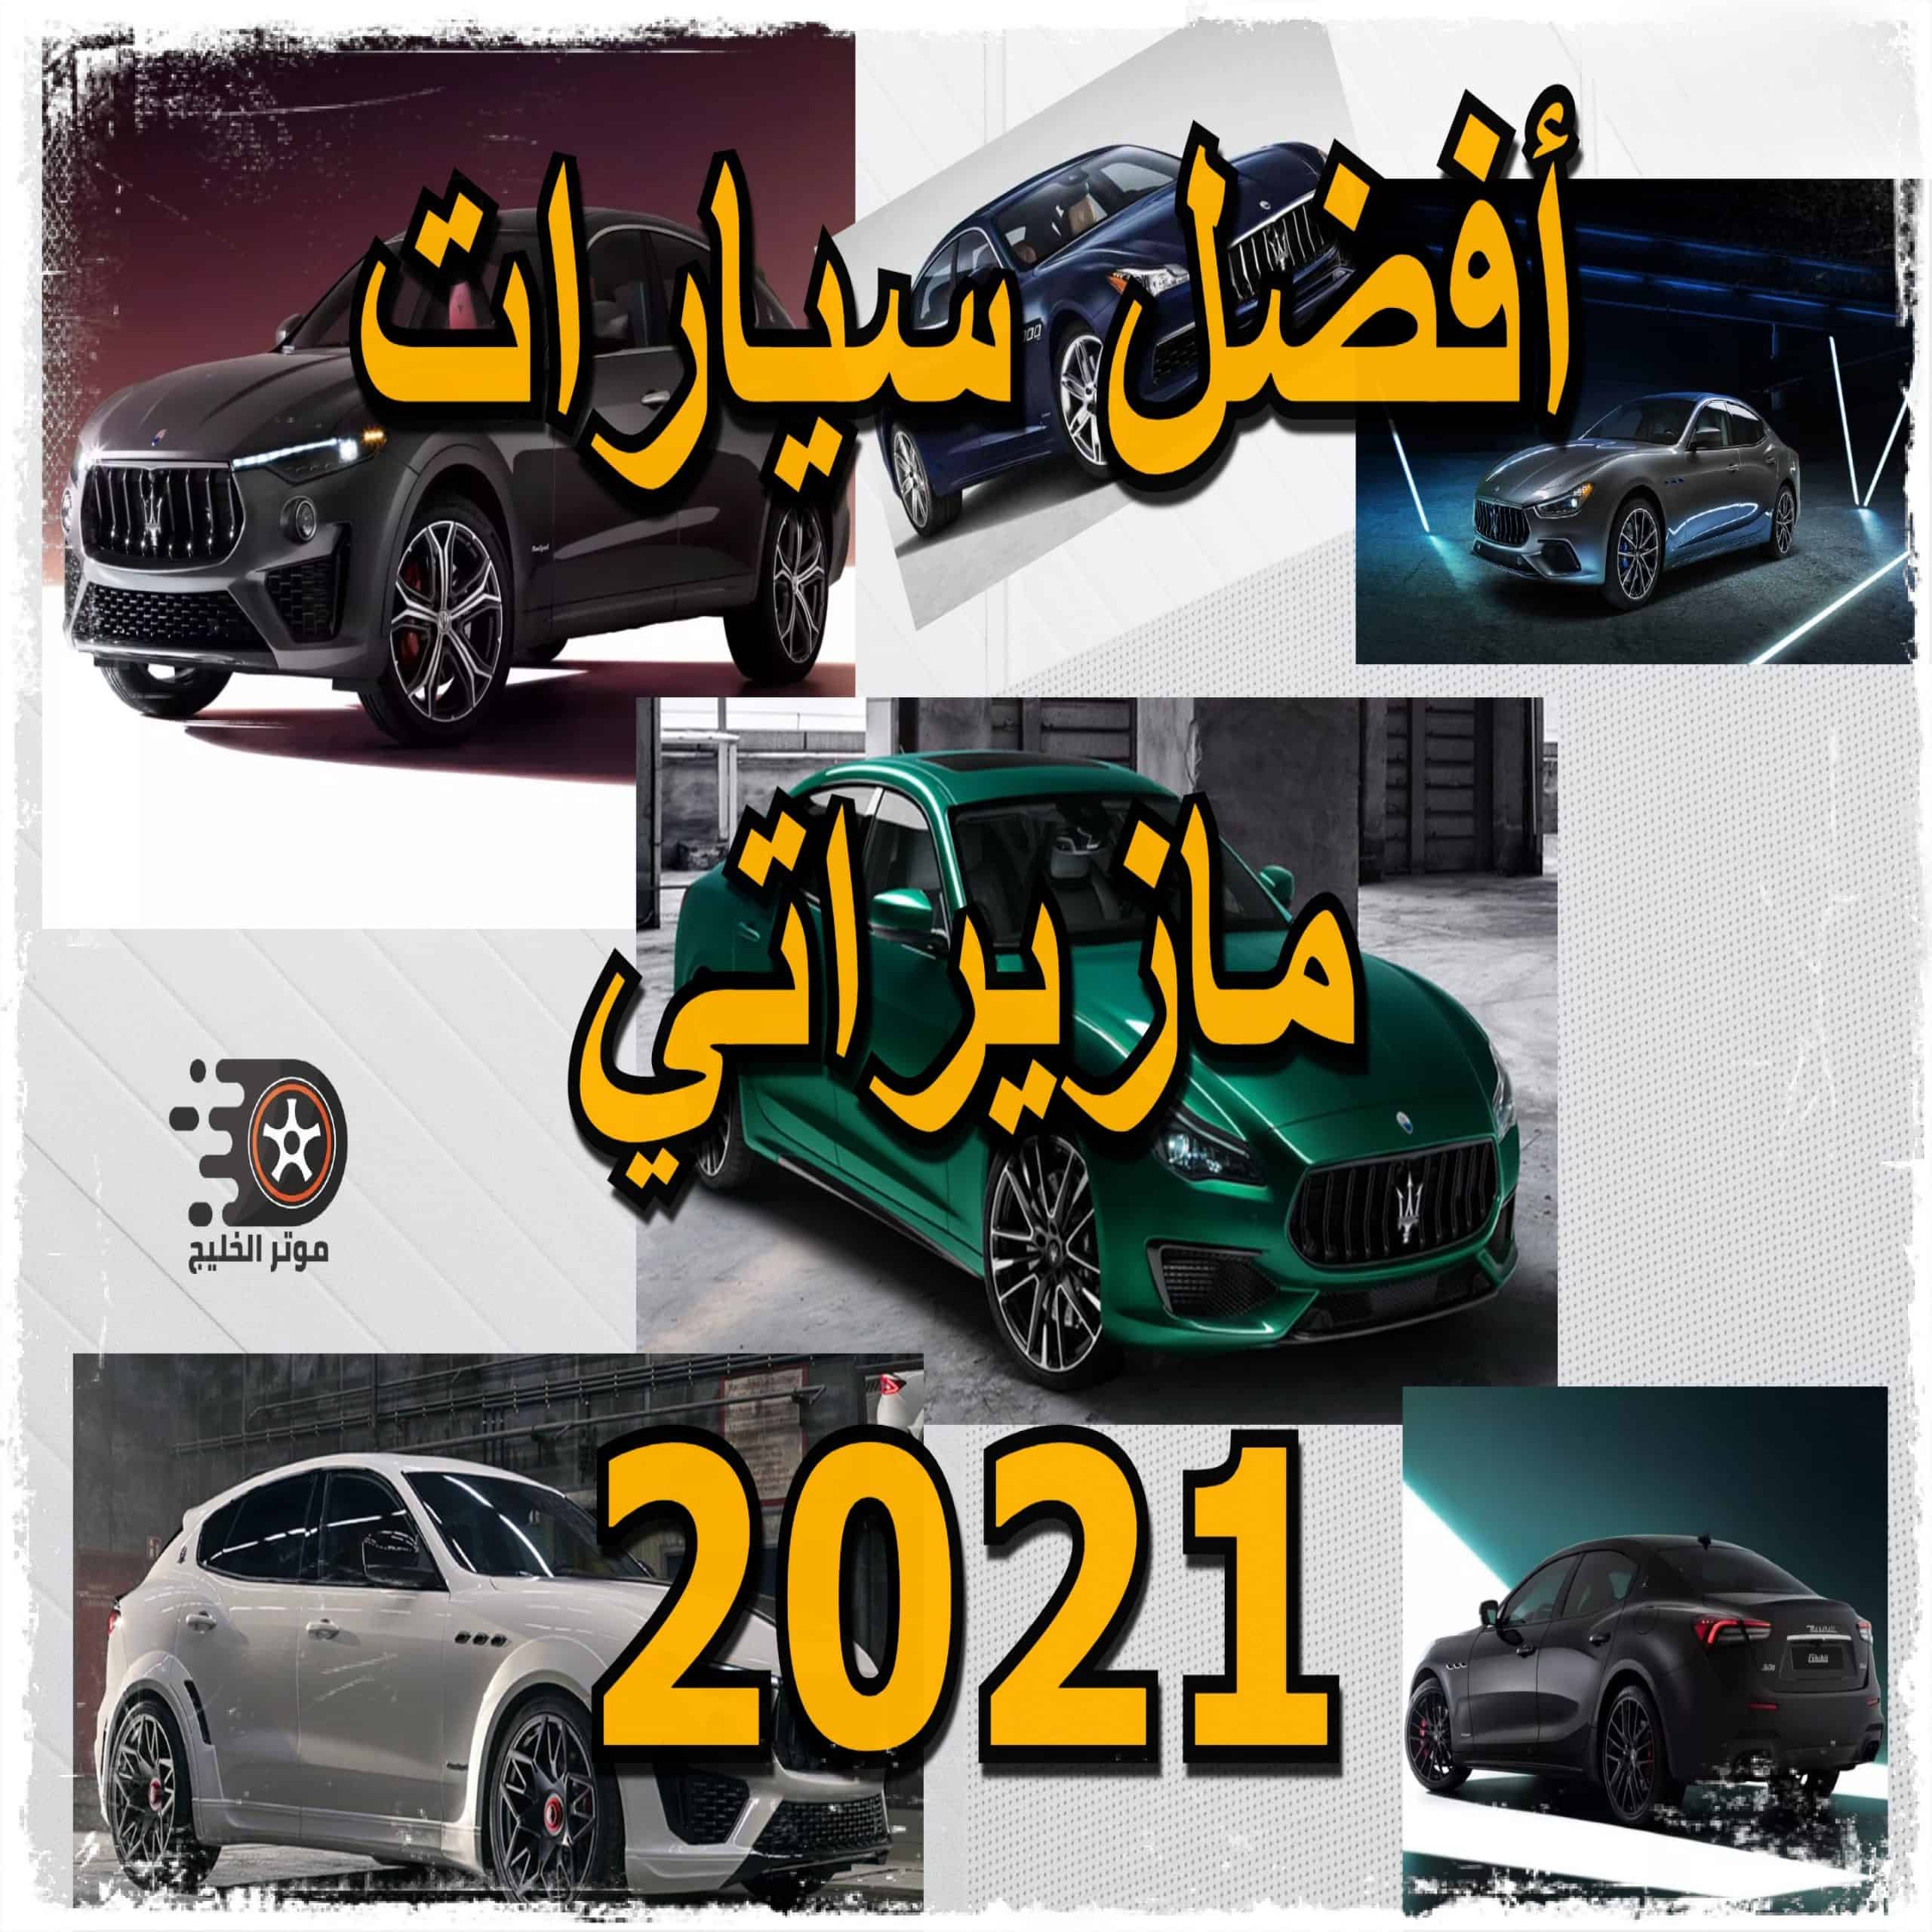 سيارات مازيراتي، أستعراض لأفضل سيارات مازيراتي 2021